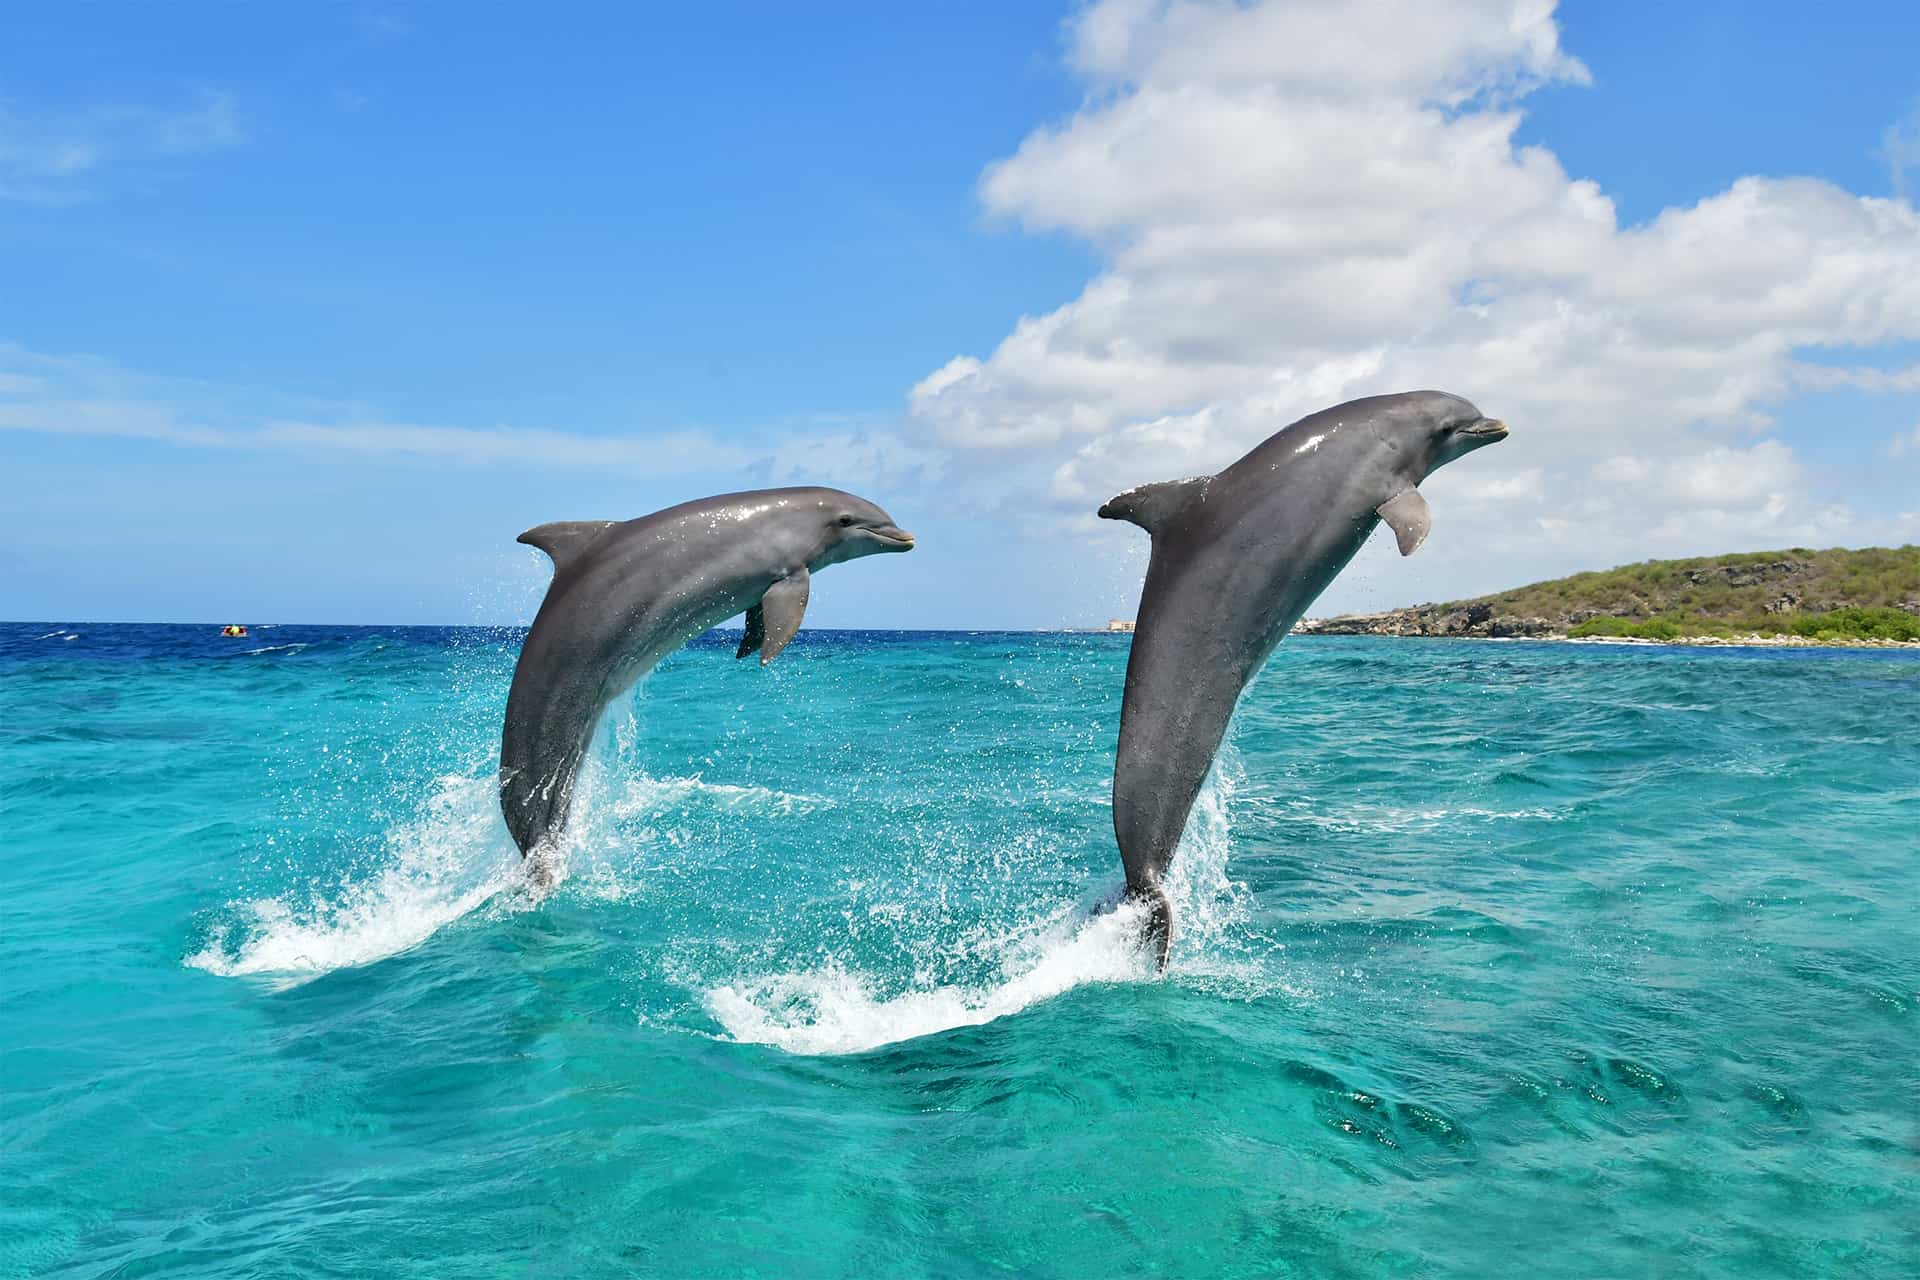 Twee vrolijke dolfijnen springen uit de zee bij de Dolphin Academy Curaçao.